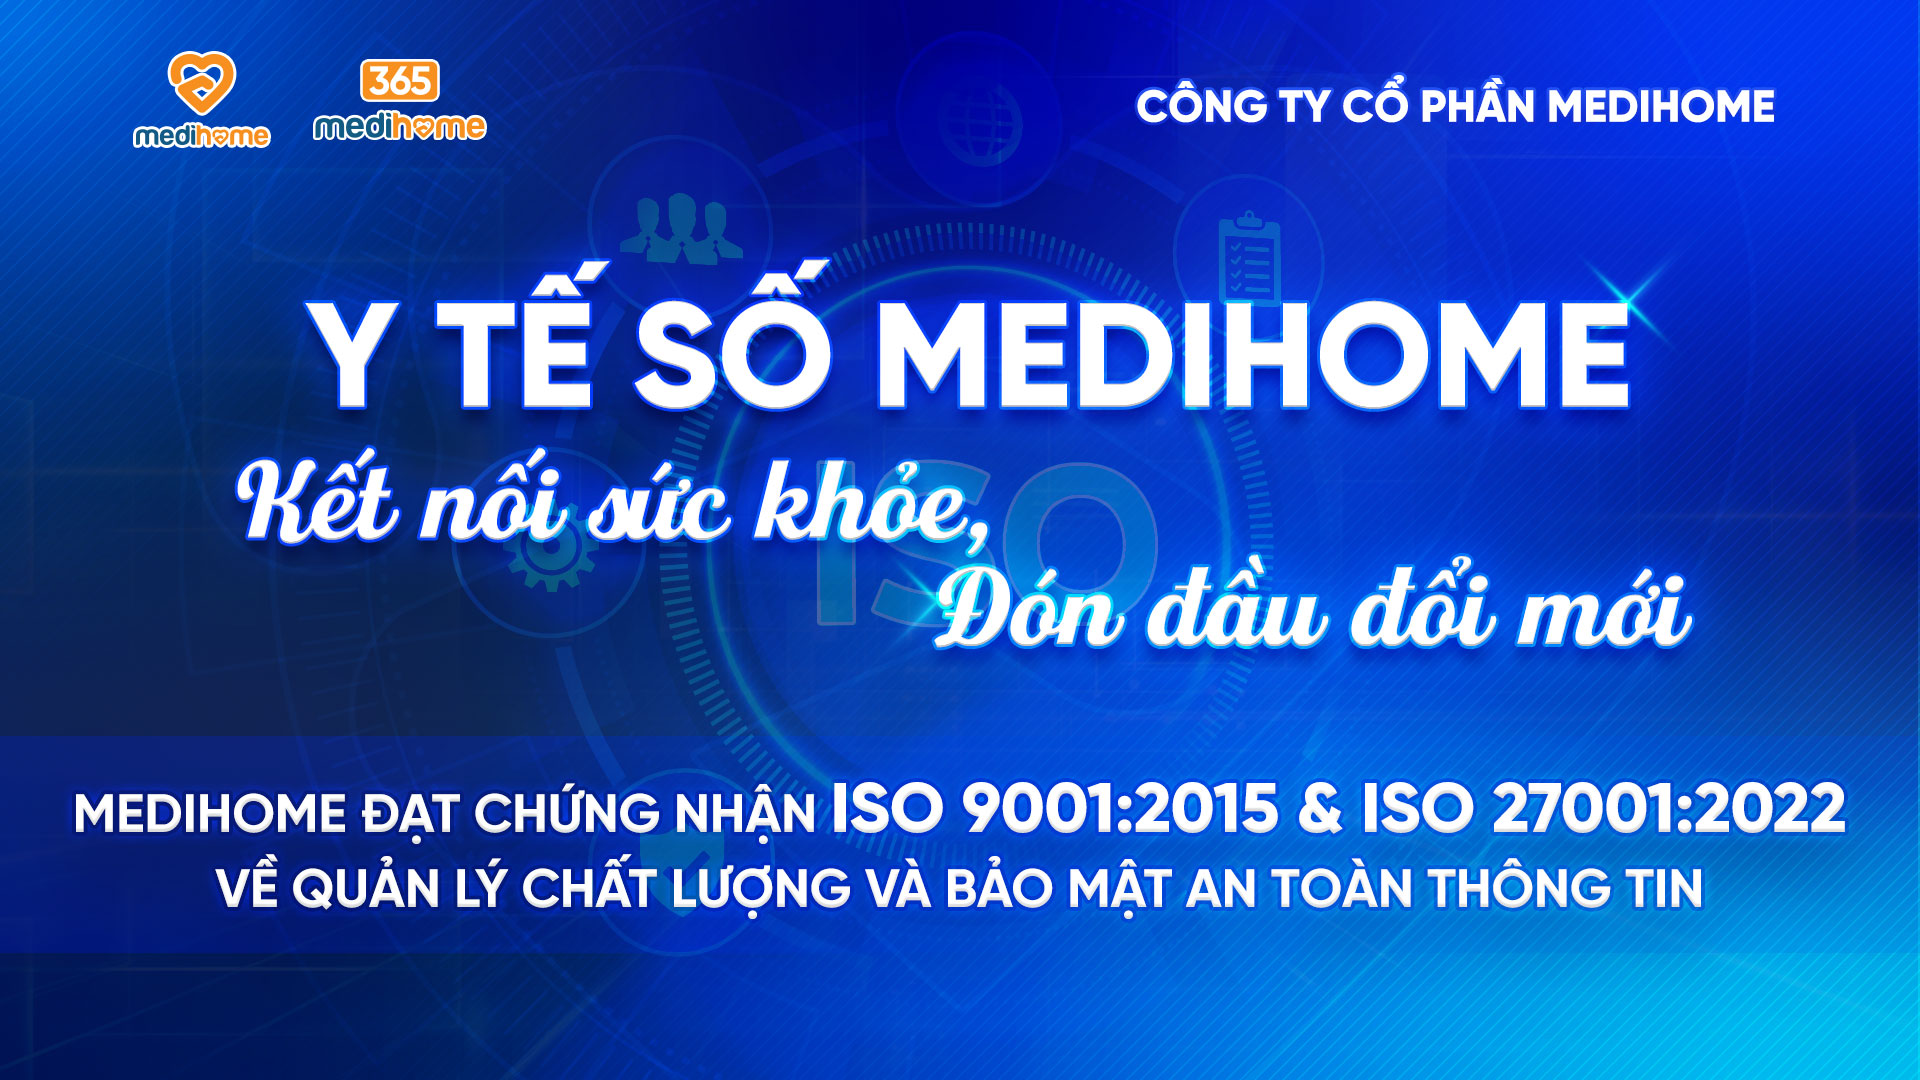 365 Medihome áp dụng thành công tiêu chuẩn ISO 9001:2015 và ISO 27001:2022